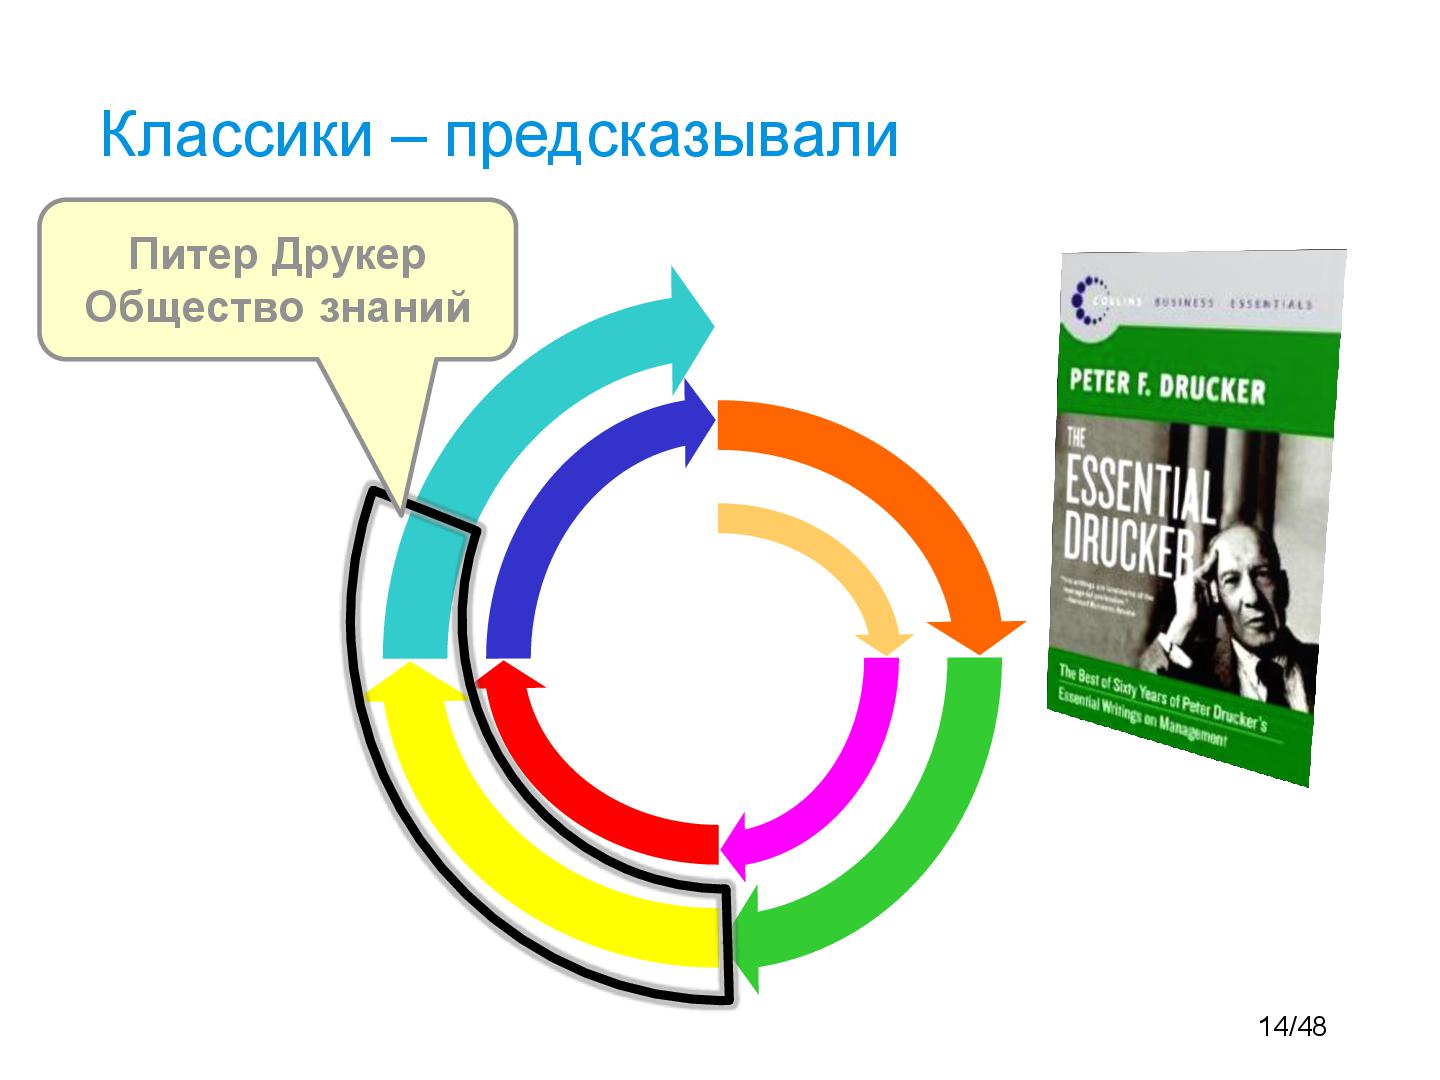 Файл:SpiralDynamics-and-IT-Tsepkov-GoEvolution.pdf